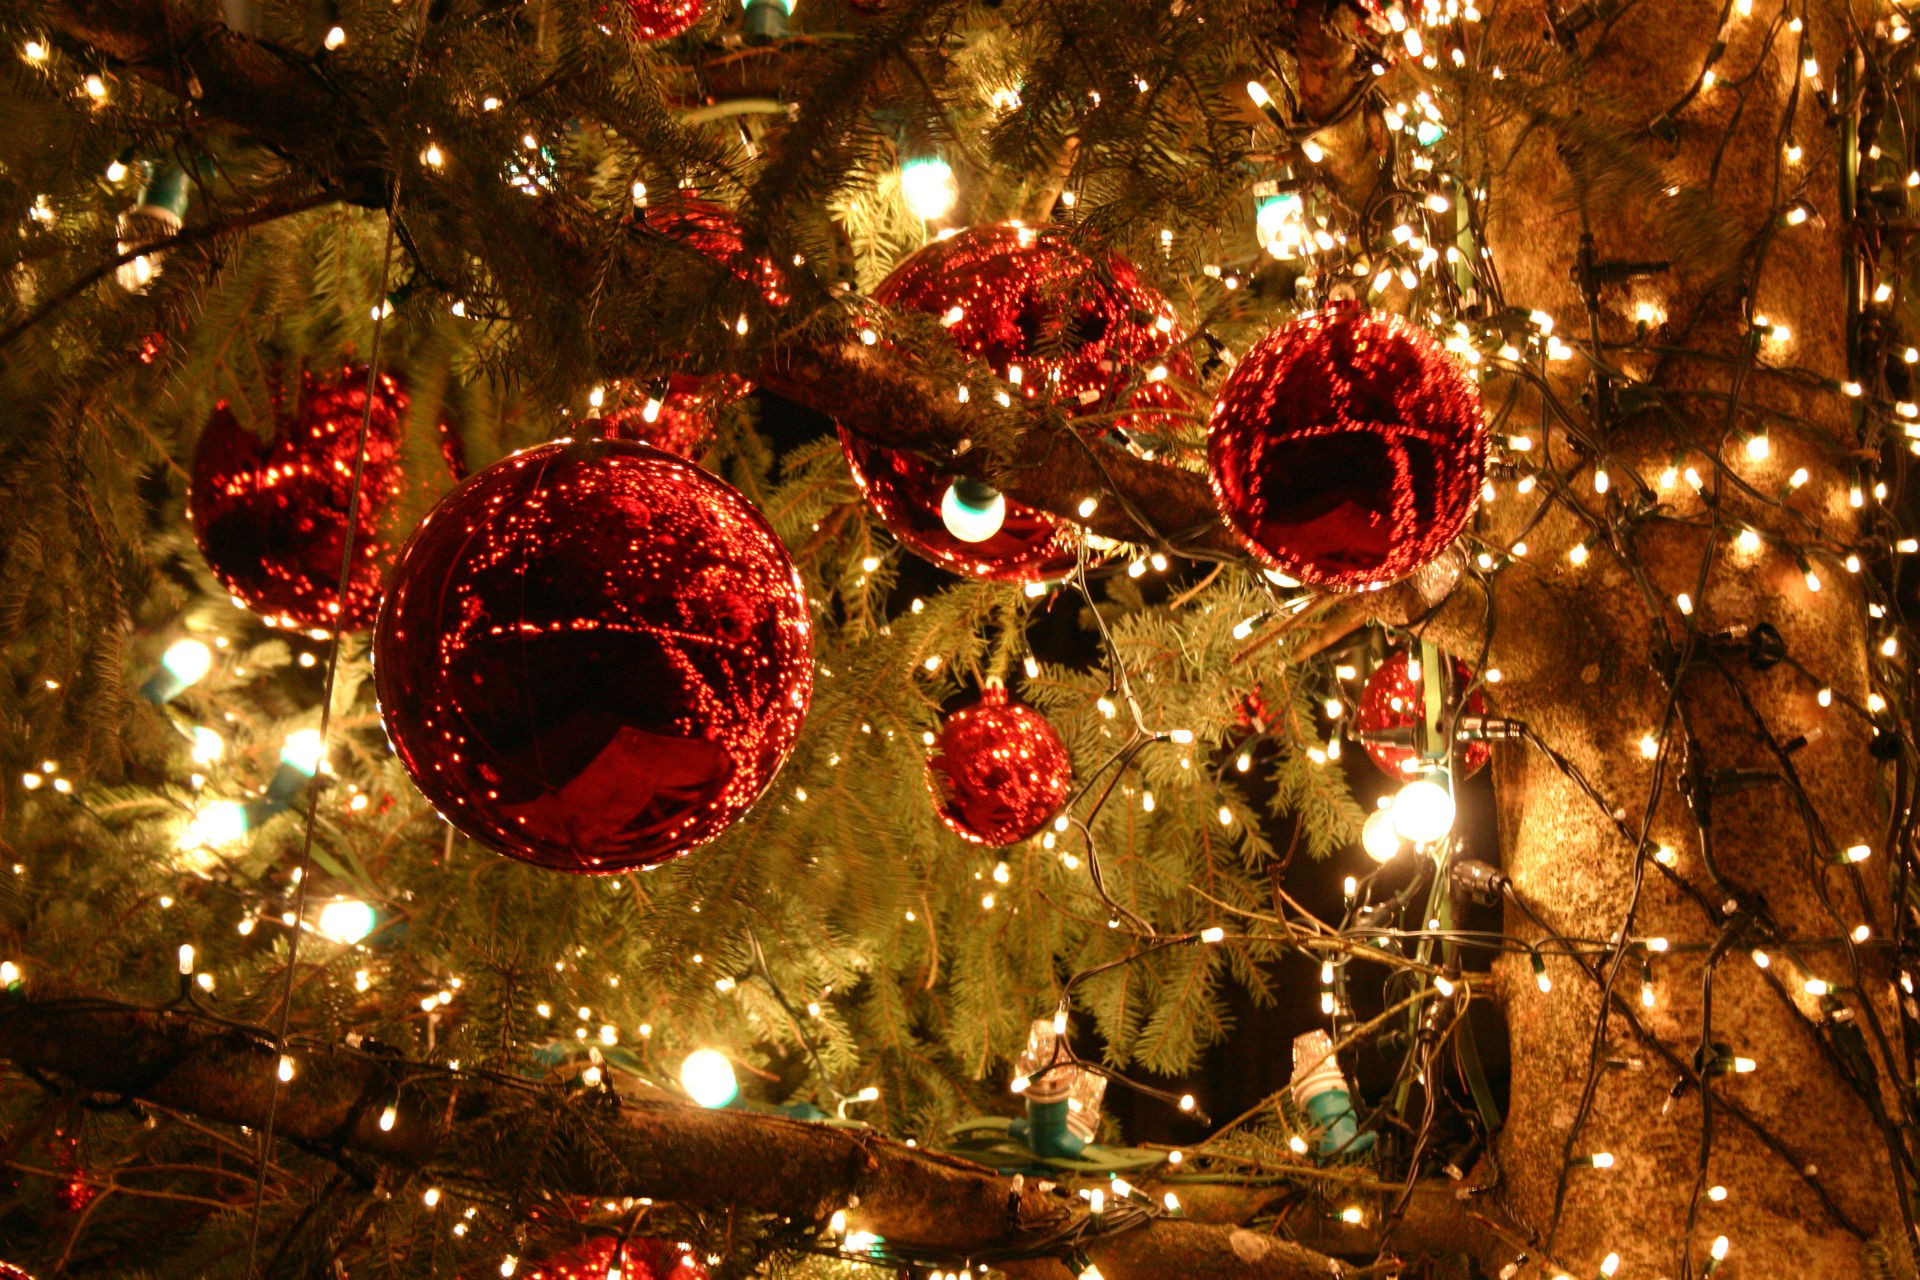 xmas wallpaper hd,ornamento di natale,decorazione natalizia,albero di natale,natale,albero